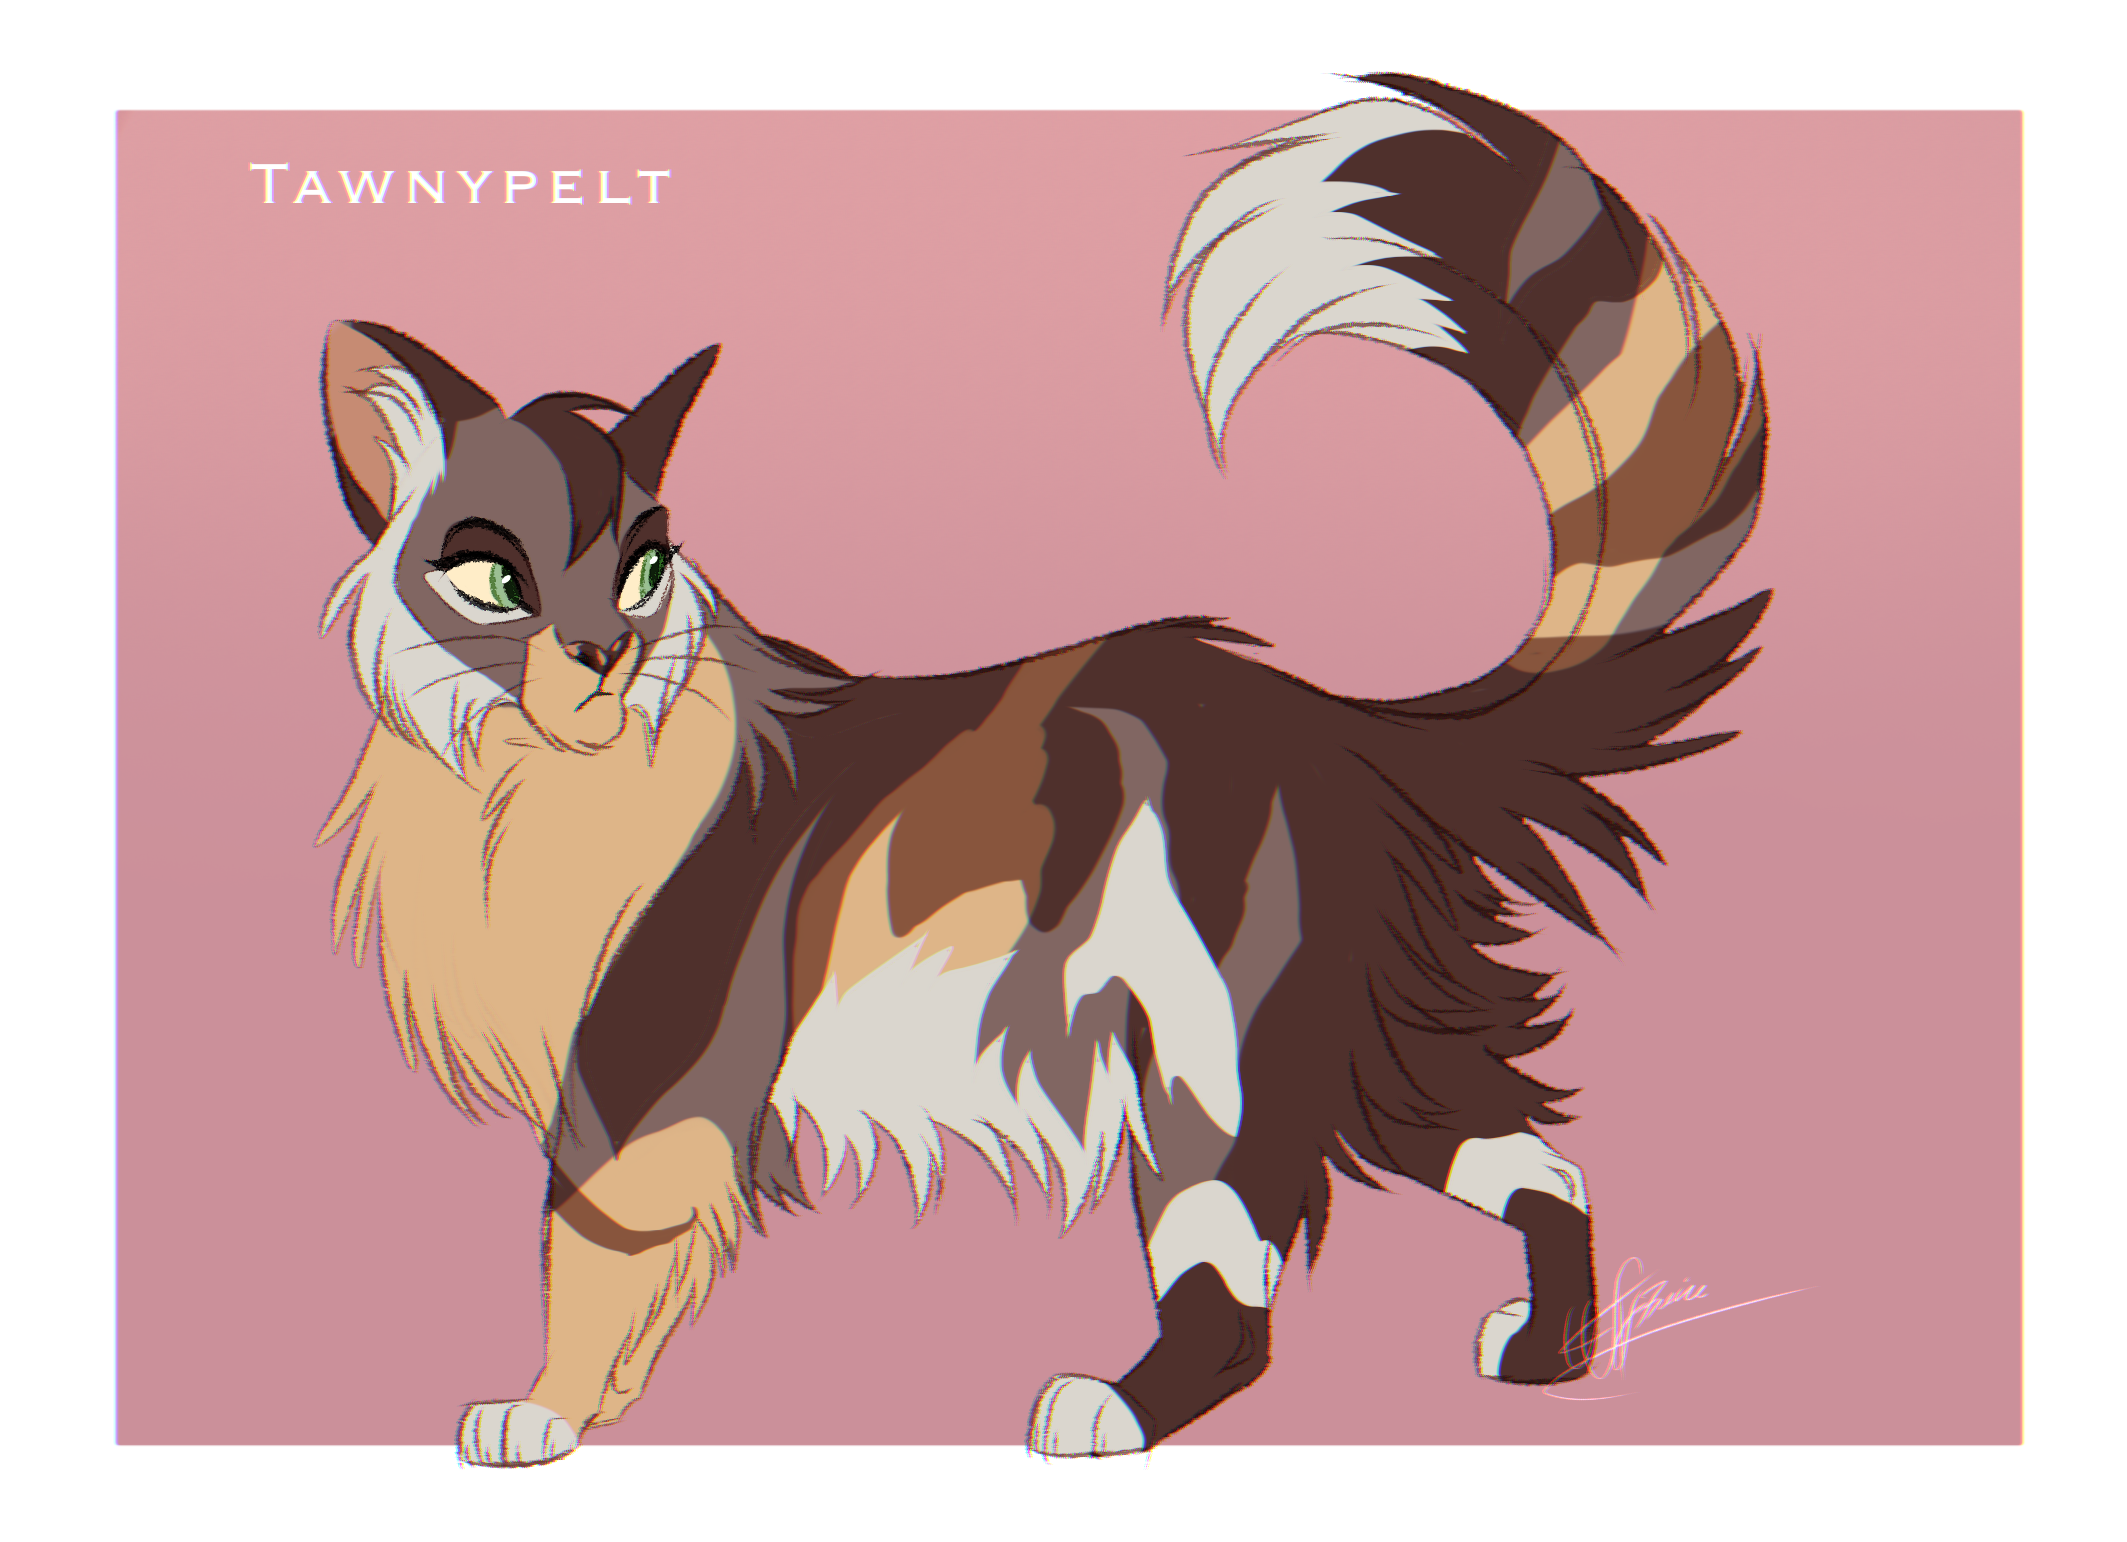 Tawnypelt design - Warriors Cats